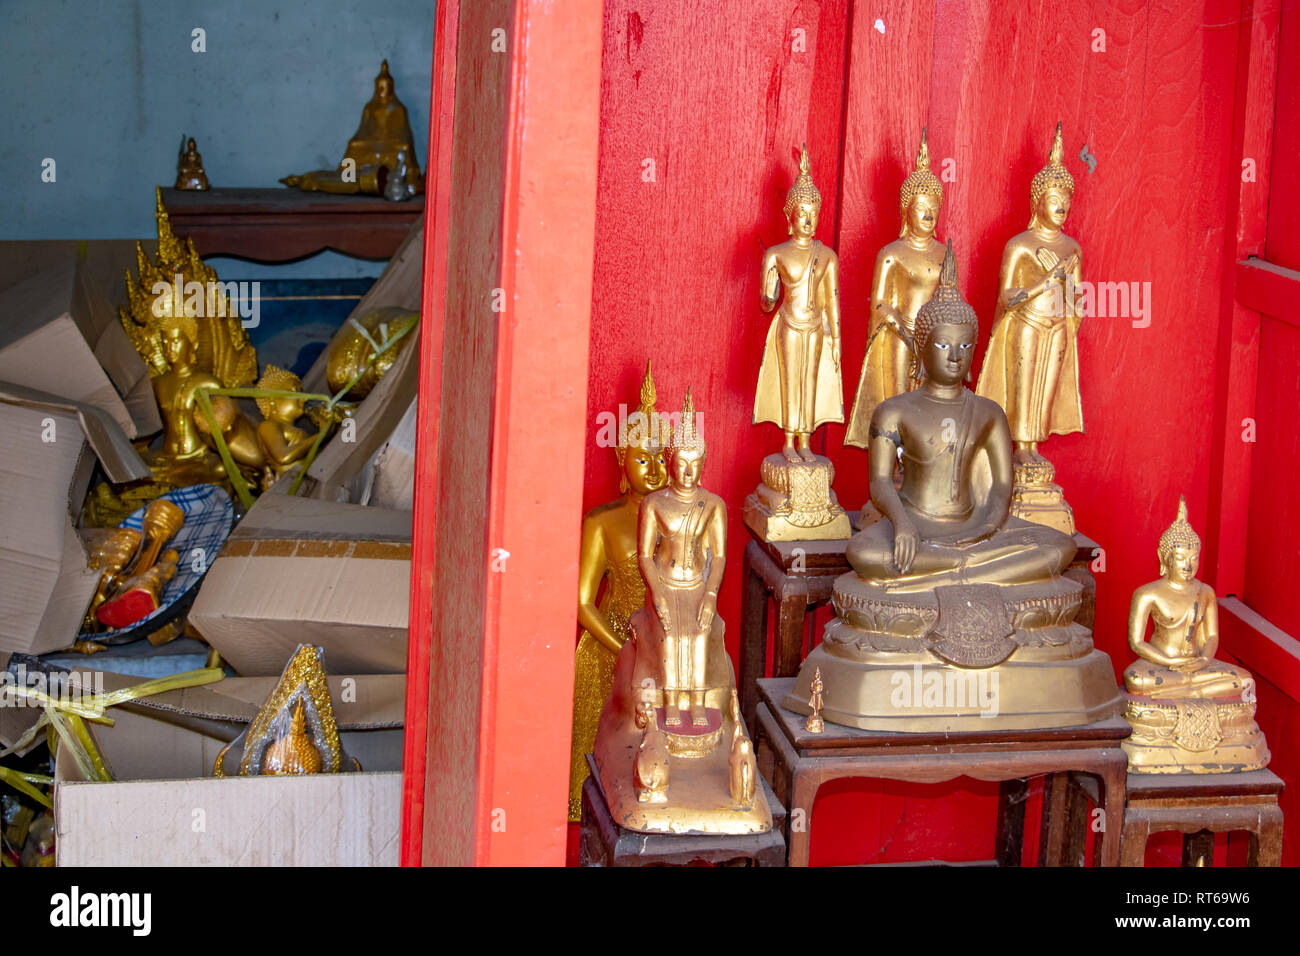 L'autel avec les statues de Bouddha, sur l'arrière-plan avec désordre d'une pile de boîtes et d'objets sacrés, dont les statues de Bouddha dans le Bouddhisme t Banque D'Images